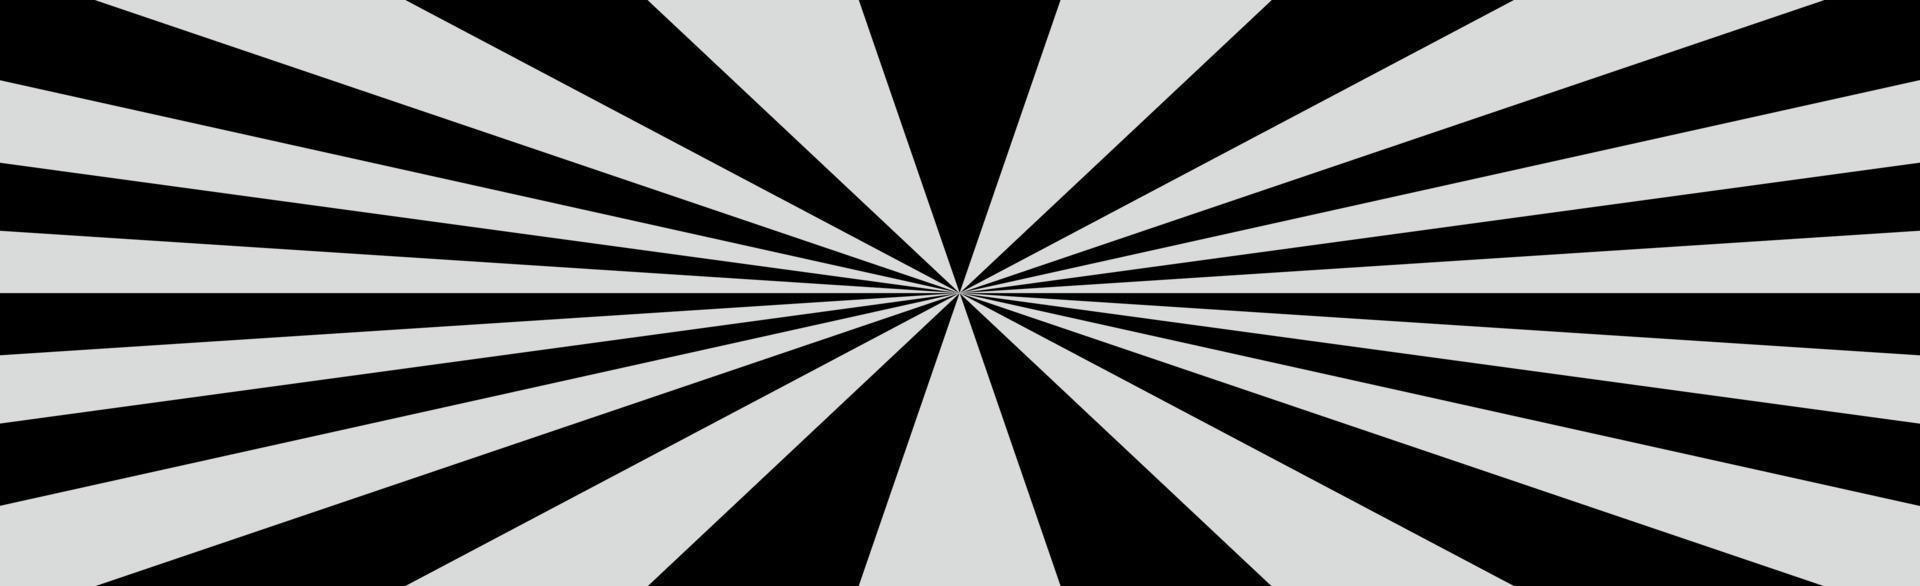 radiale zwart-witte stralen, panoramische patroontextuurachtergrond - vector